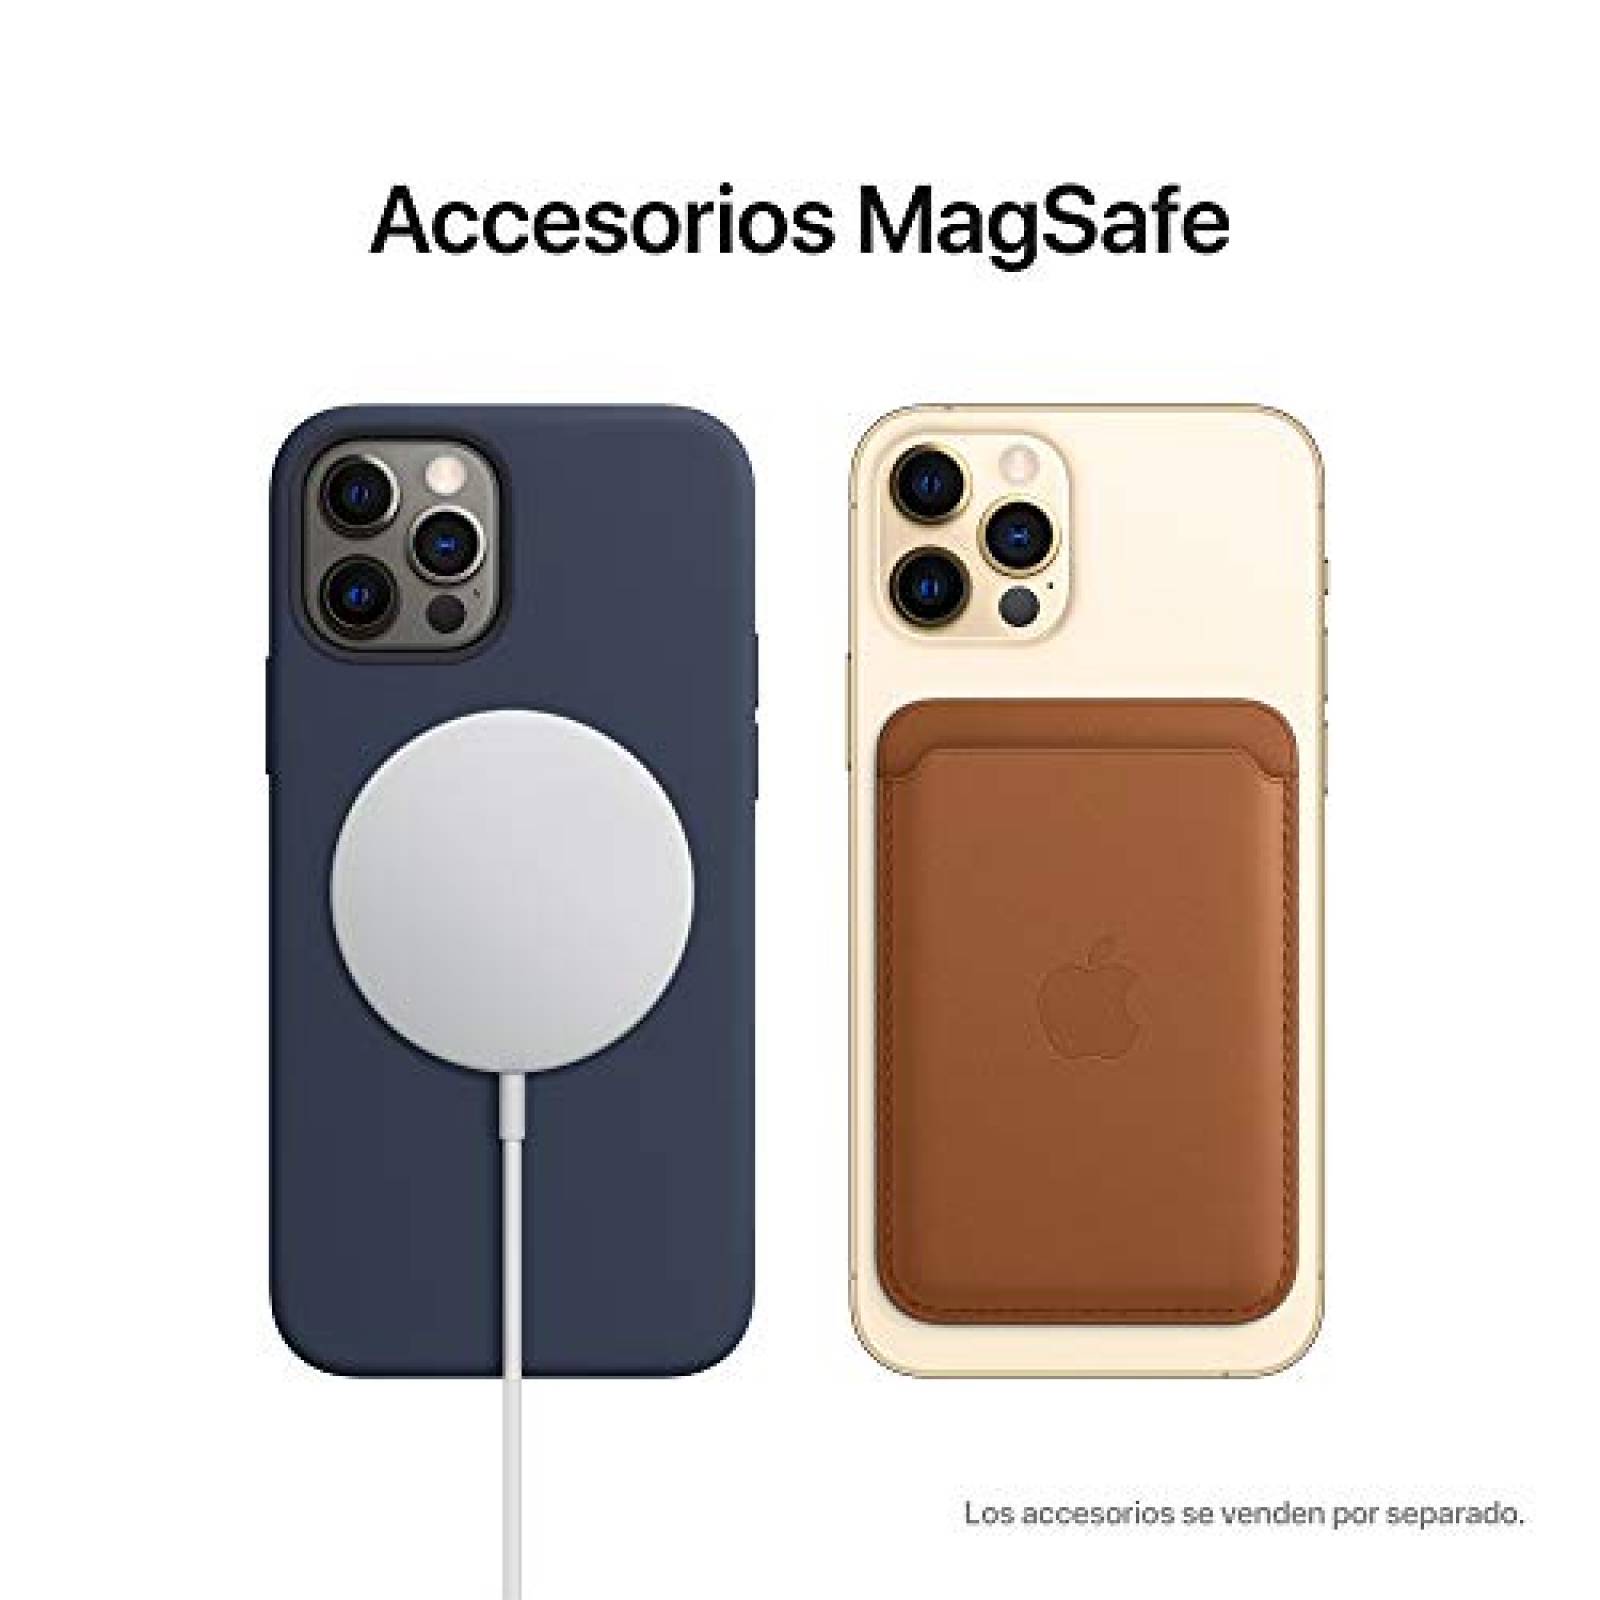 Apple AirPods Pro -1ª generación con MagSafe (renovado Premium)